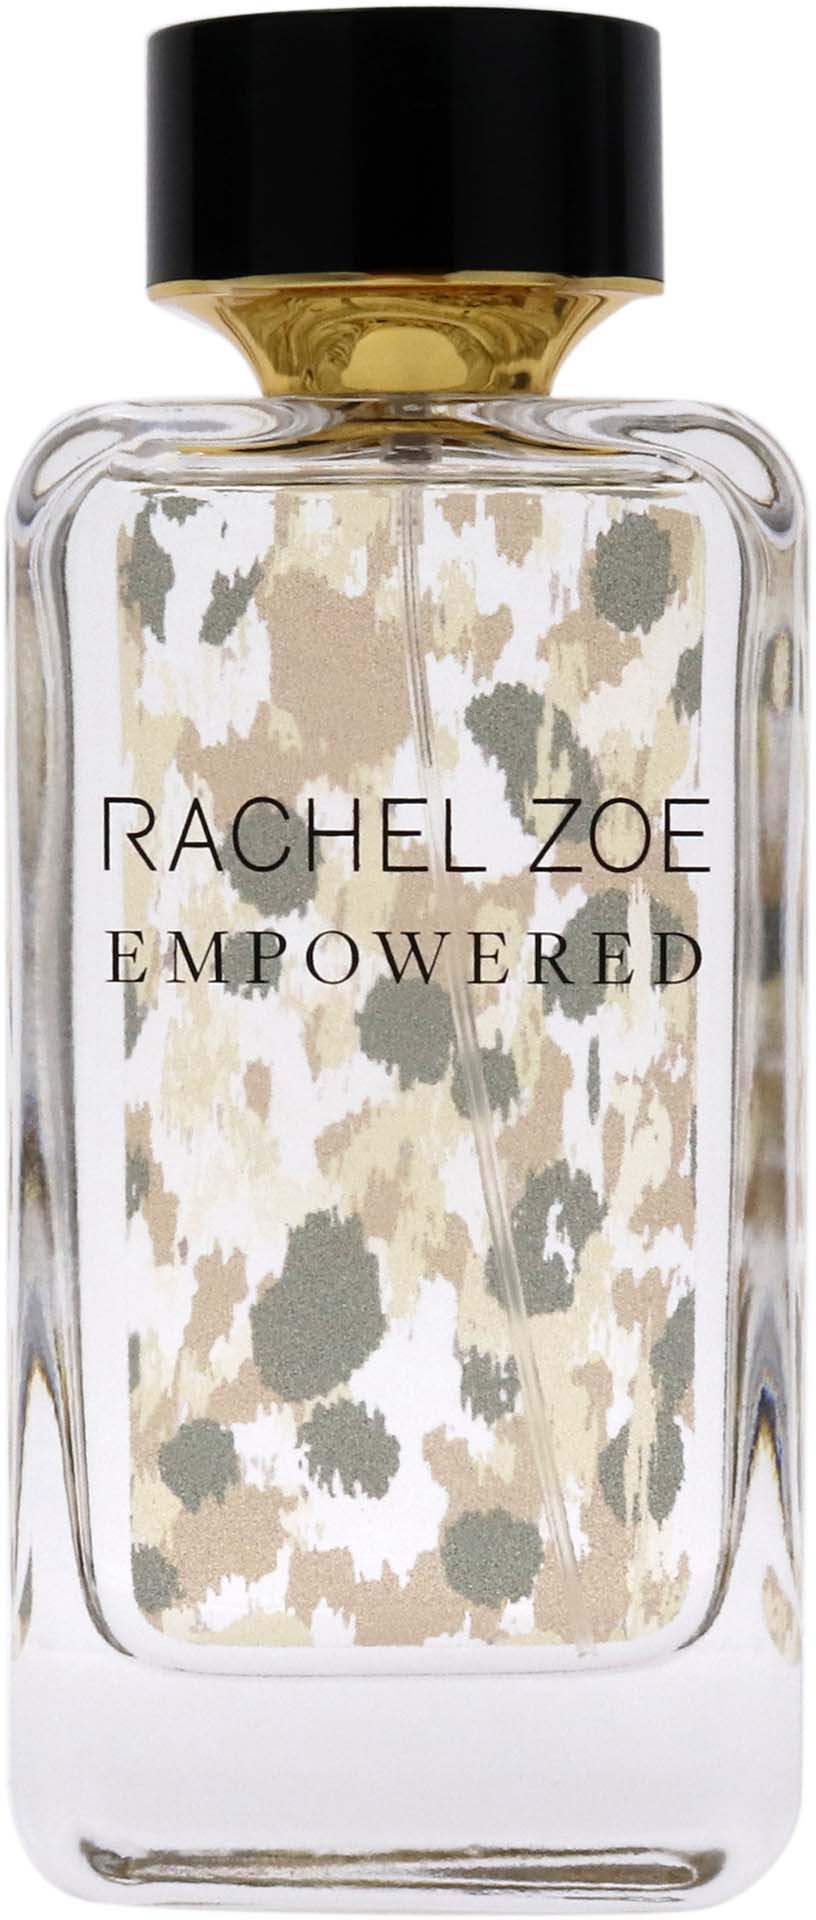 rachel zoe empowered